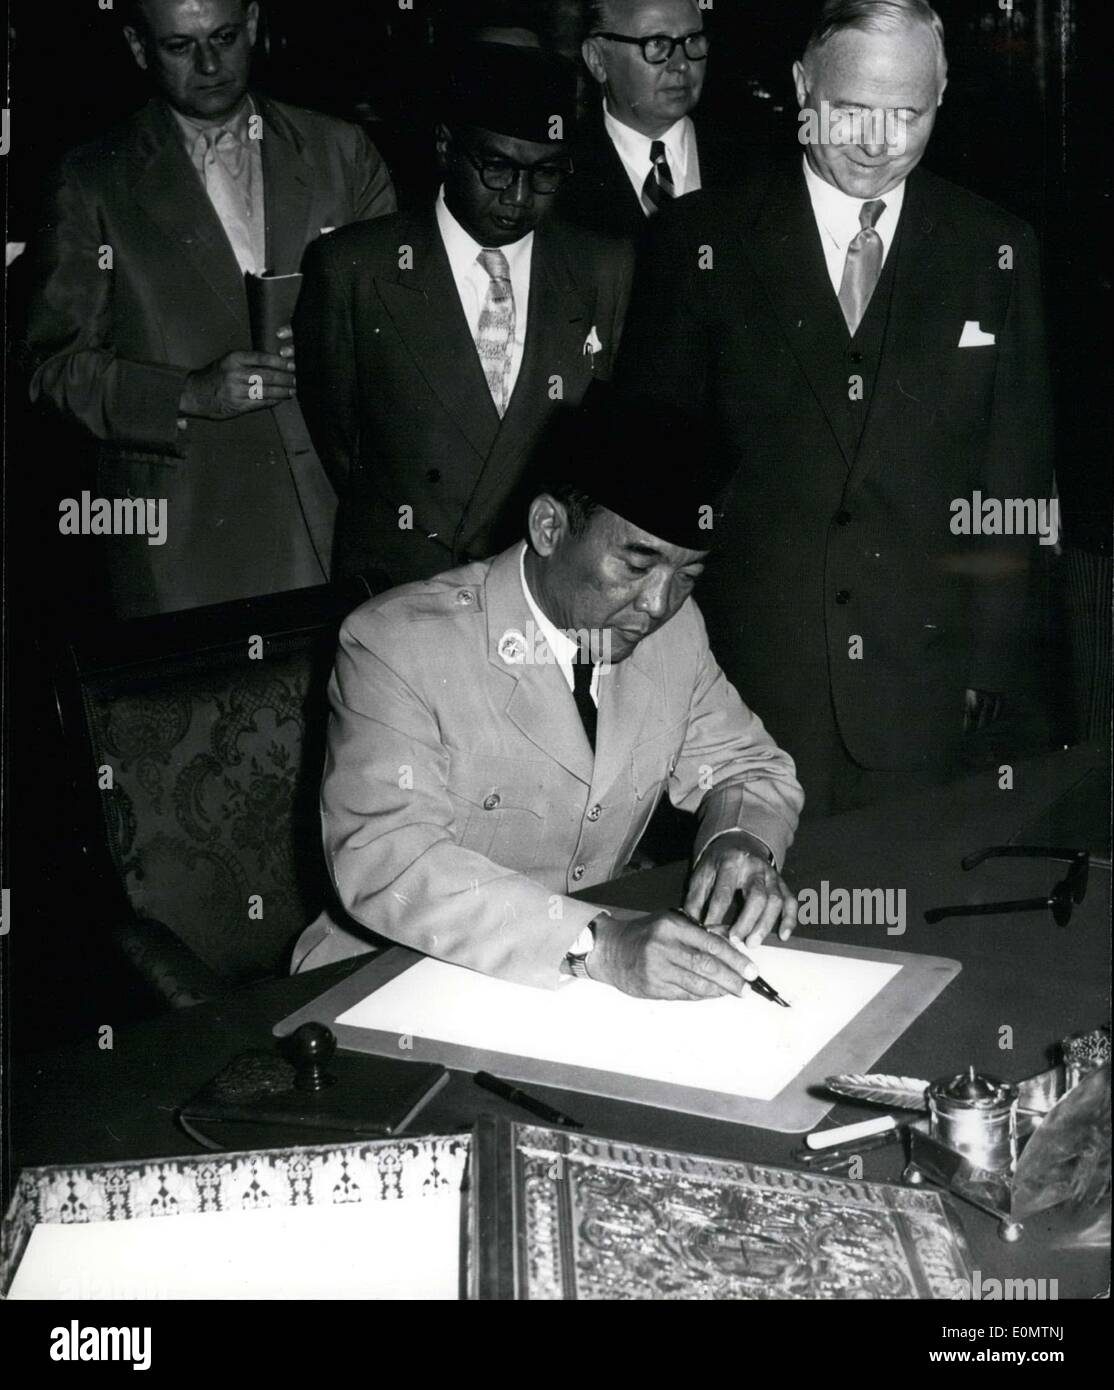 Giugno 21, 1956 - Presidente indonesiano Sukarno firmato nel libro d'oro della città di Amburgo di giovedì. Egli ha pagato una visita ufficiale alla città di Hansa nel suo viaggio attraverso la Germania giovedì. La nostra immagine mostra: Dr. Sukarno(centro) e Sindaco dott.ssa Sieveking(a destra) Foto Stock